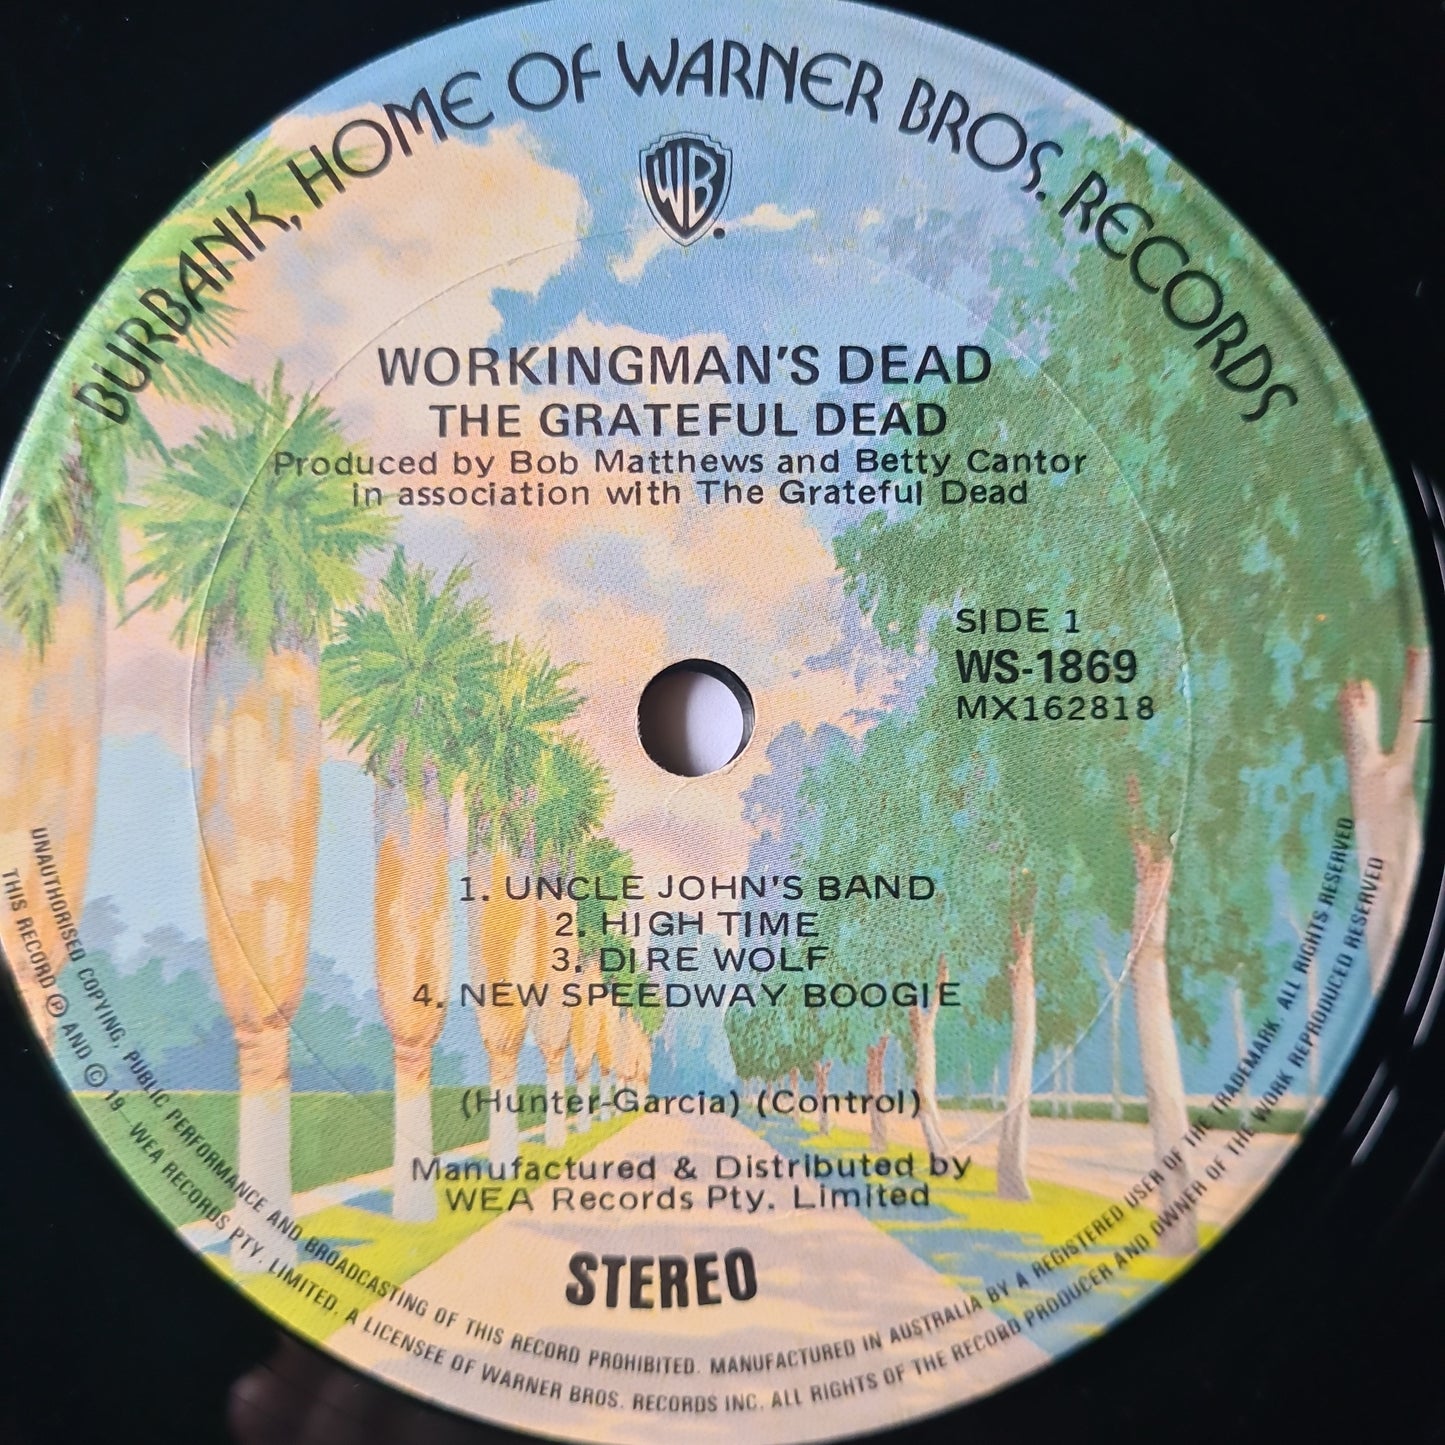 Grateful Dead – Workingman's Dead - 1975 - Vinyl Record